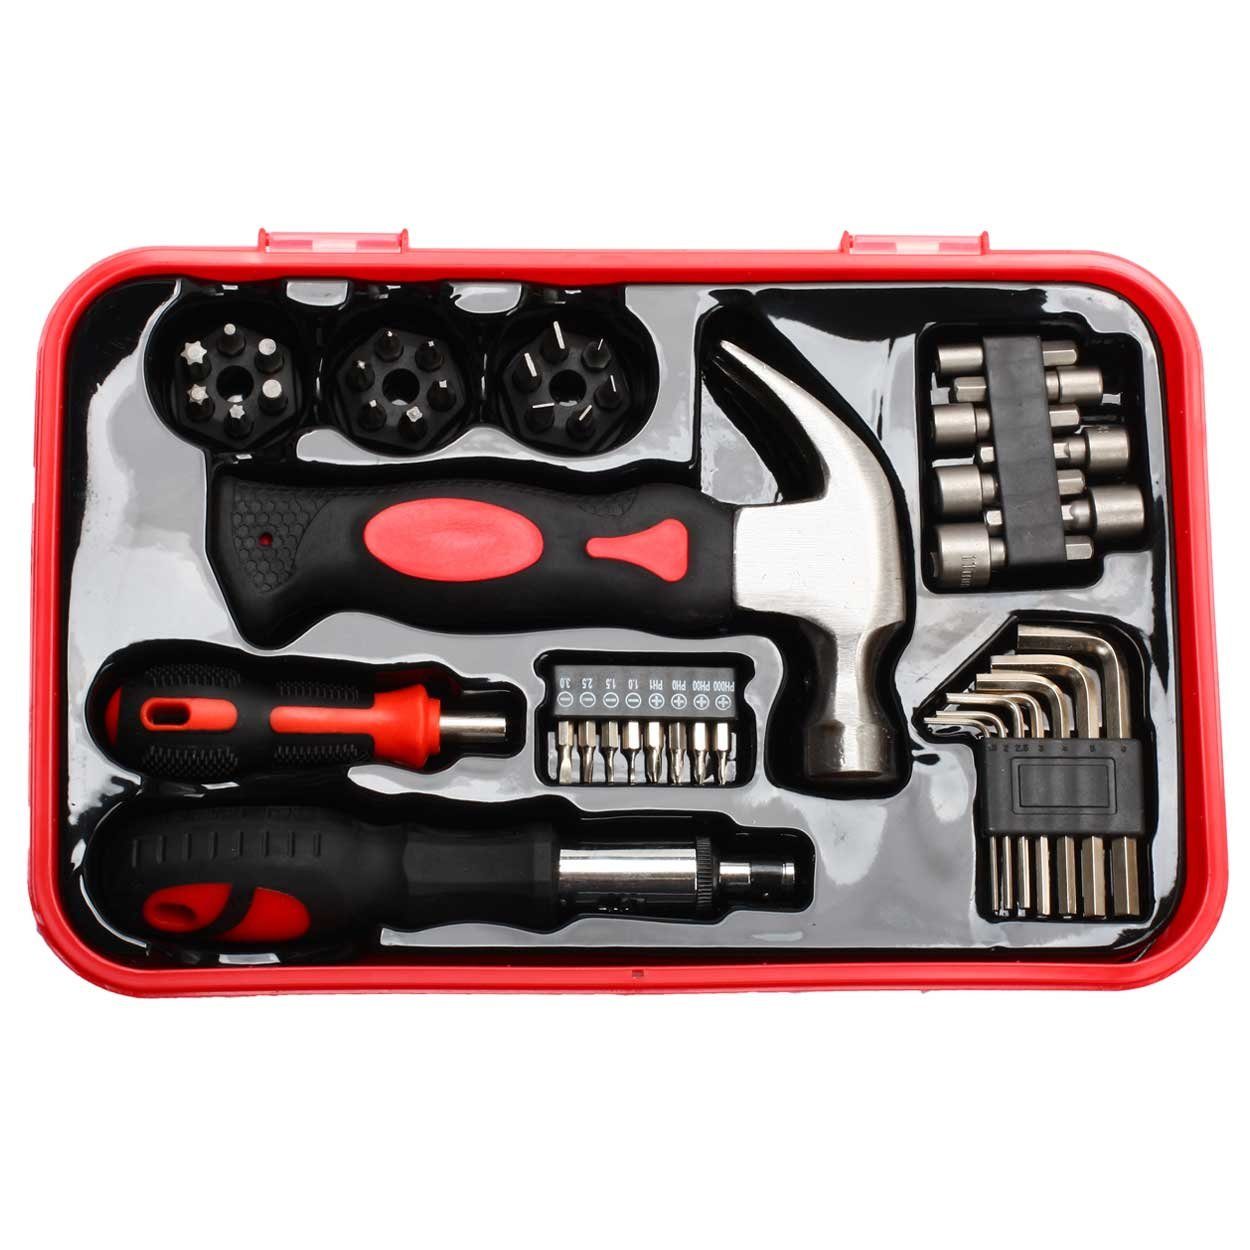 SCHMIDT security Box Werkzeugset Handwerkzeug tools Werkzeugsatz Werkzeugkoffer Set 43-teilig TS-43